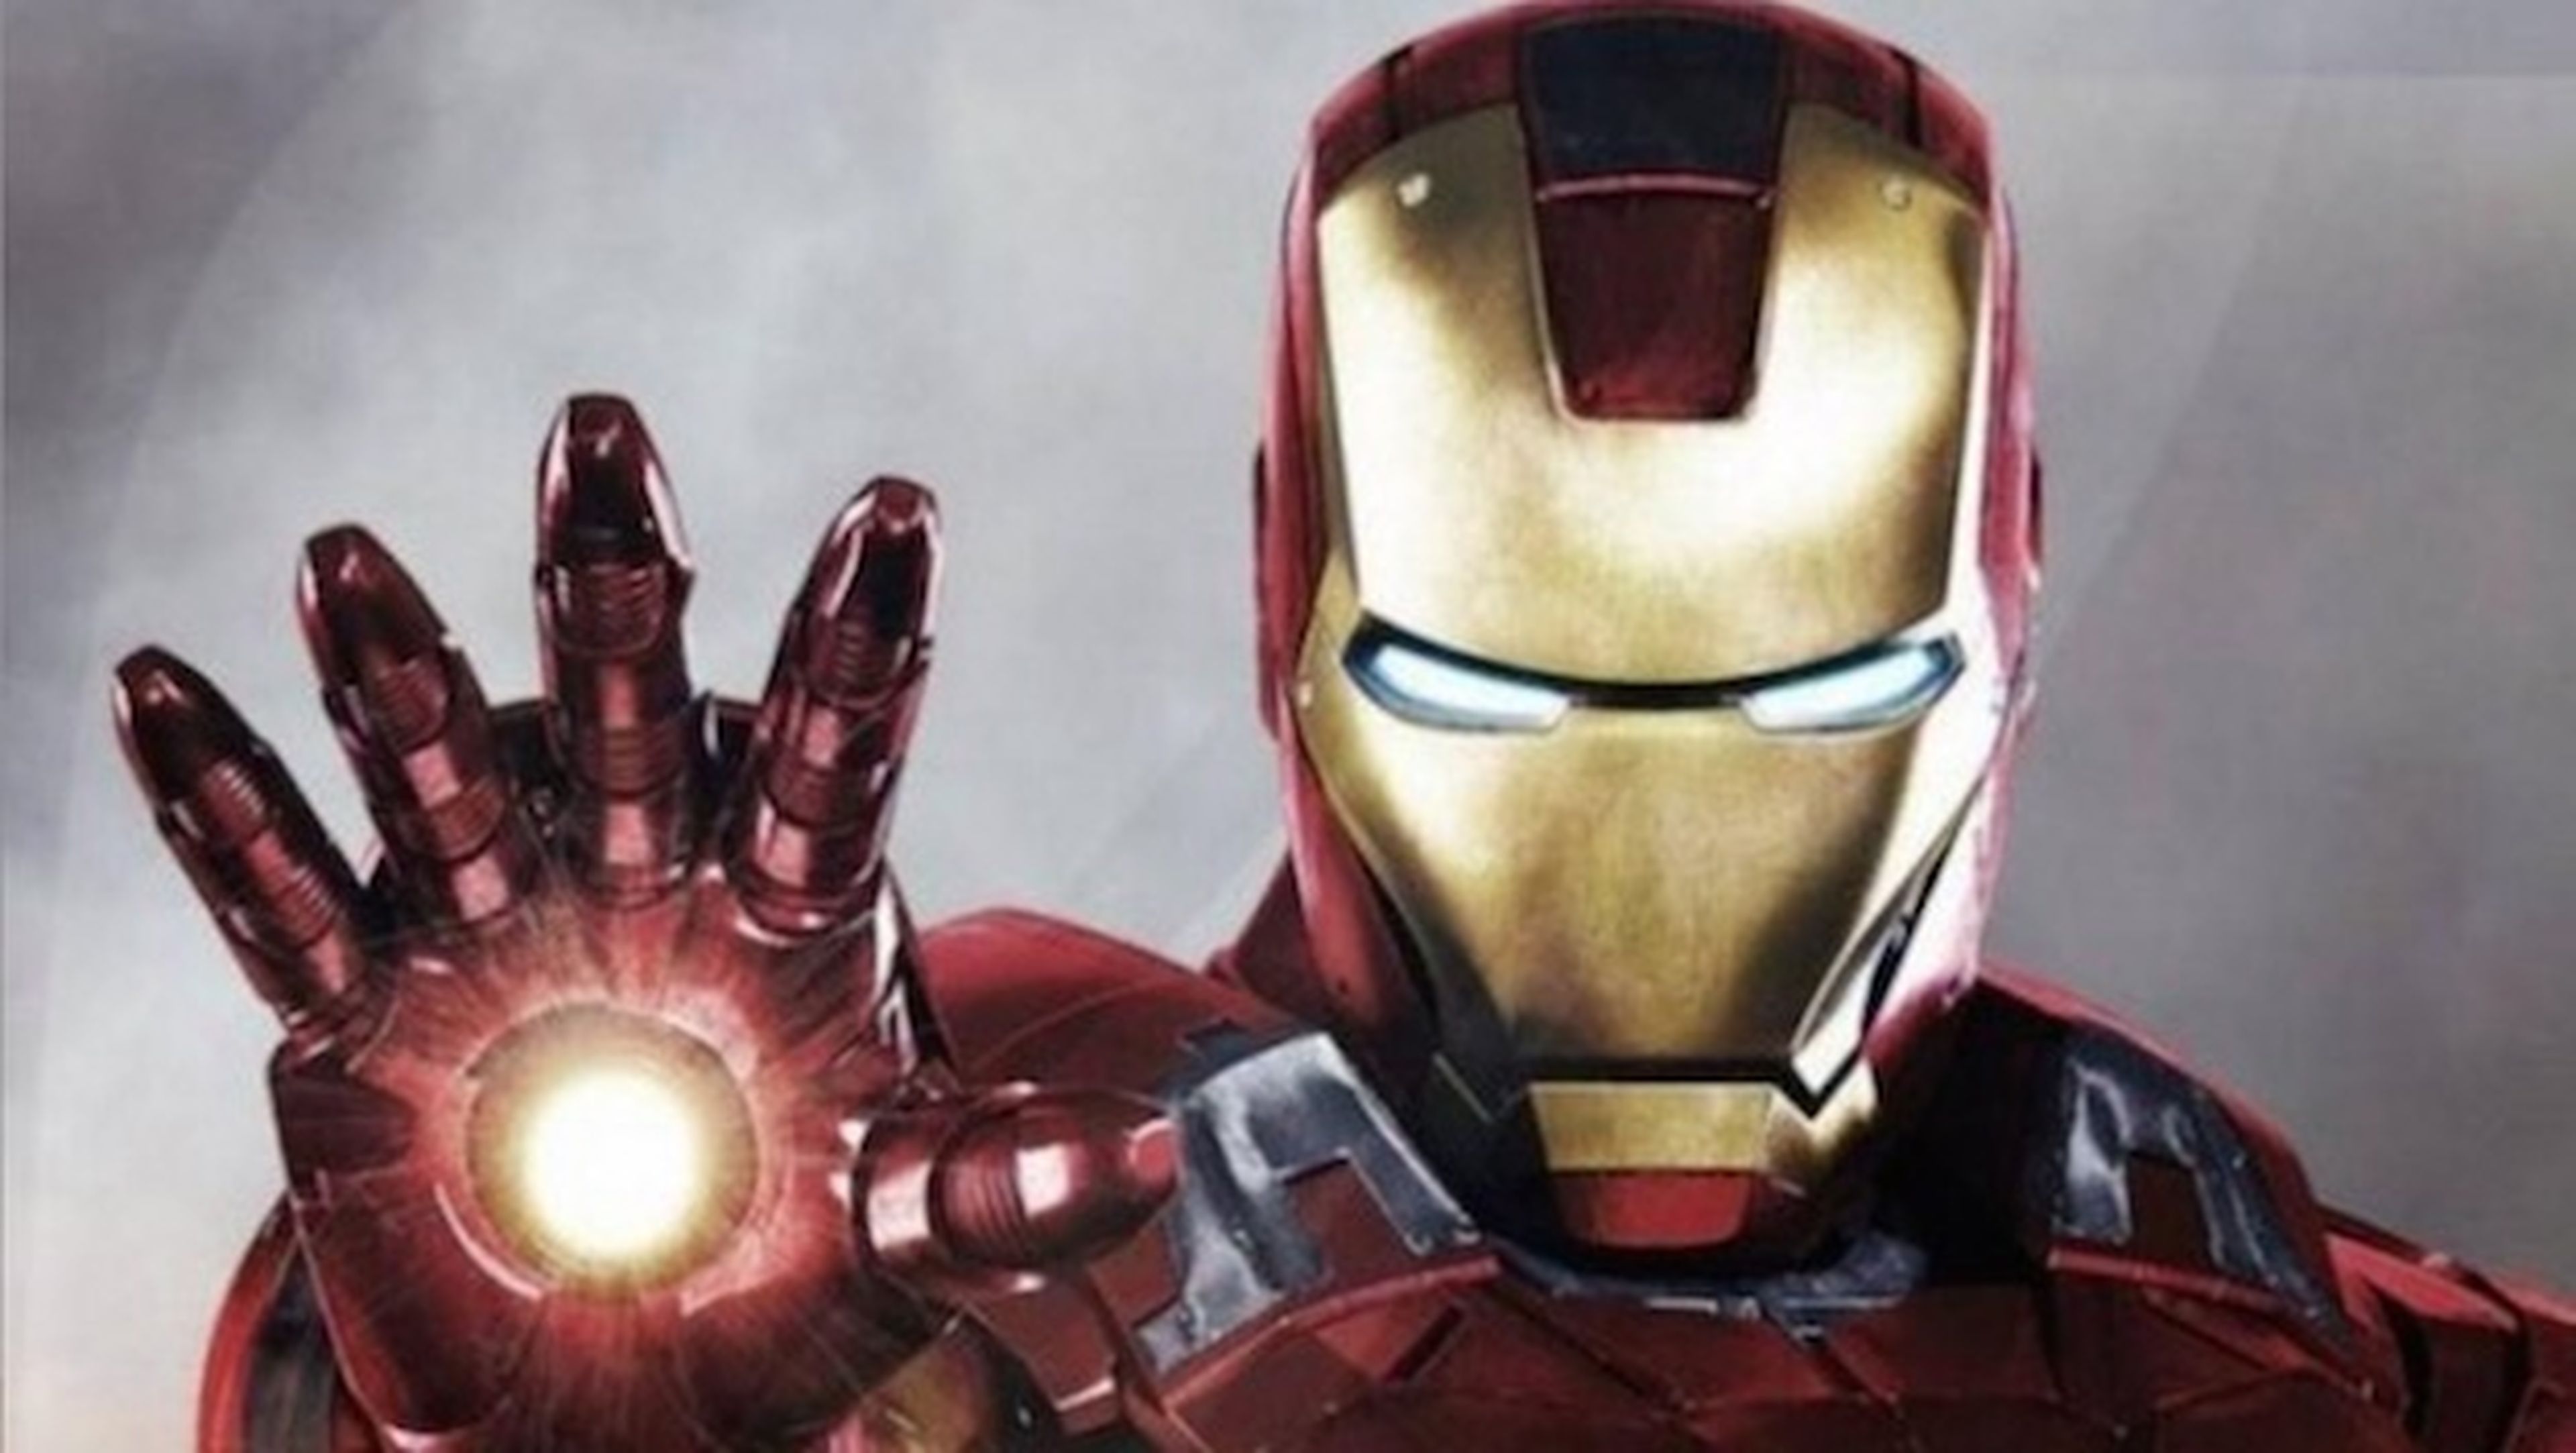 Móvil para superhéroes, Galaxy S6 y S6 Edge versión Iron Man